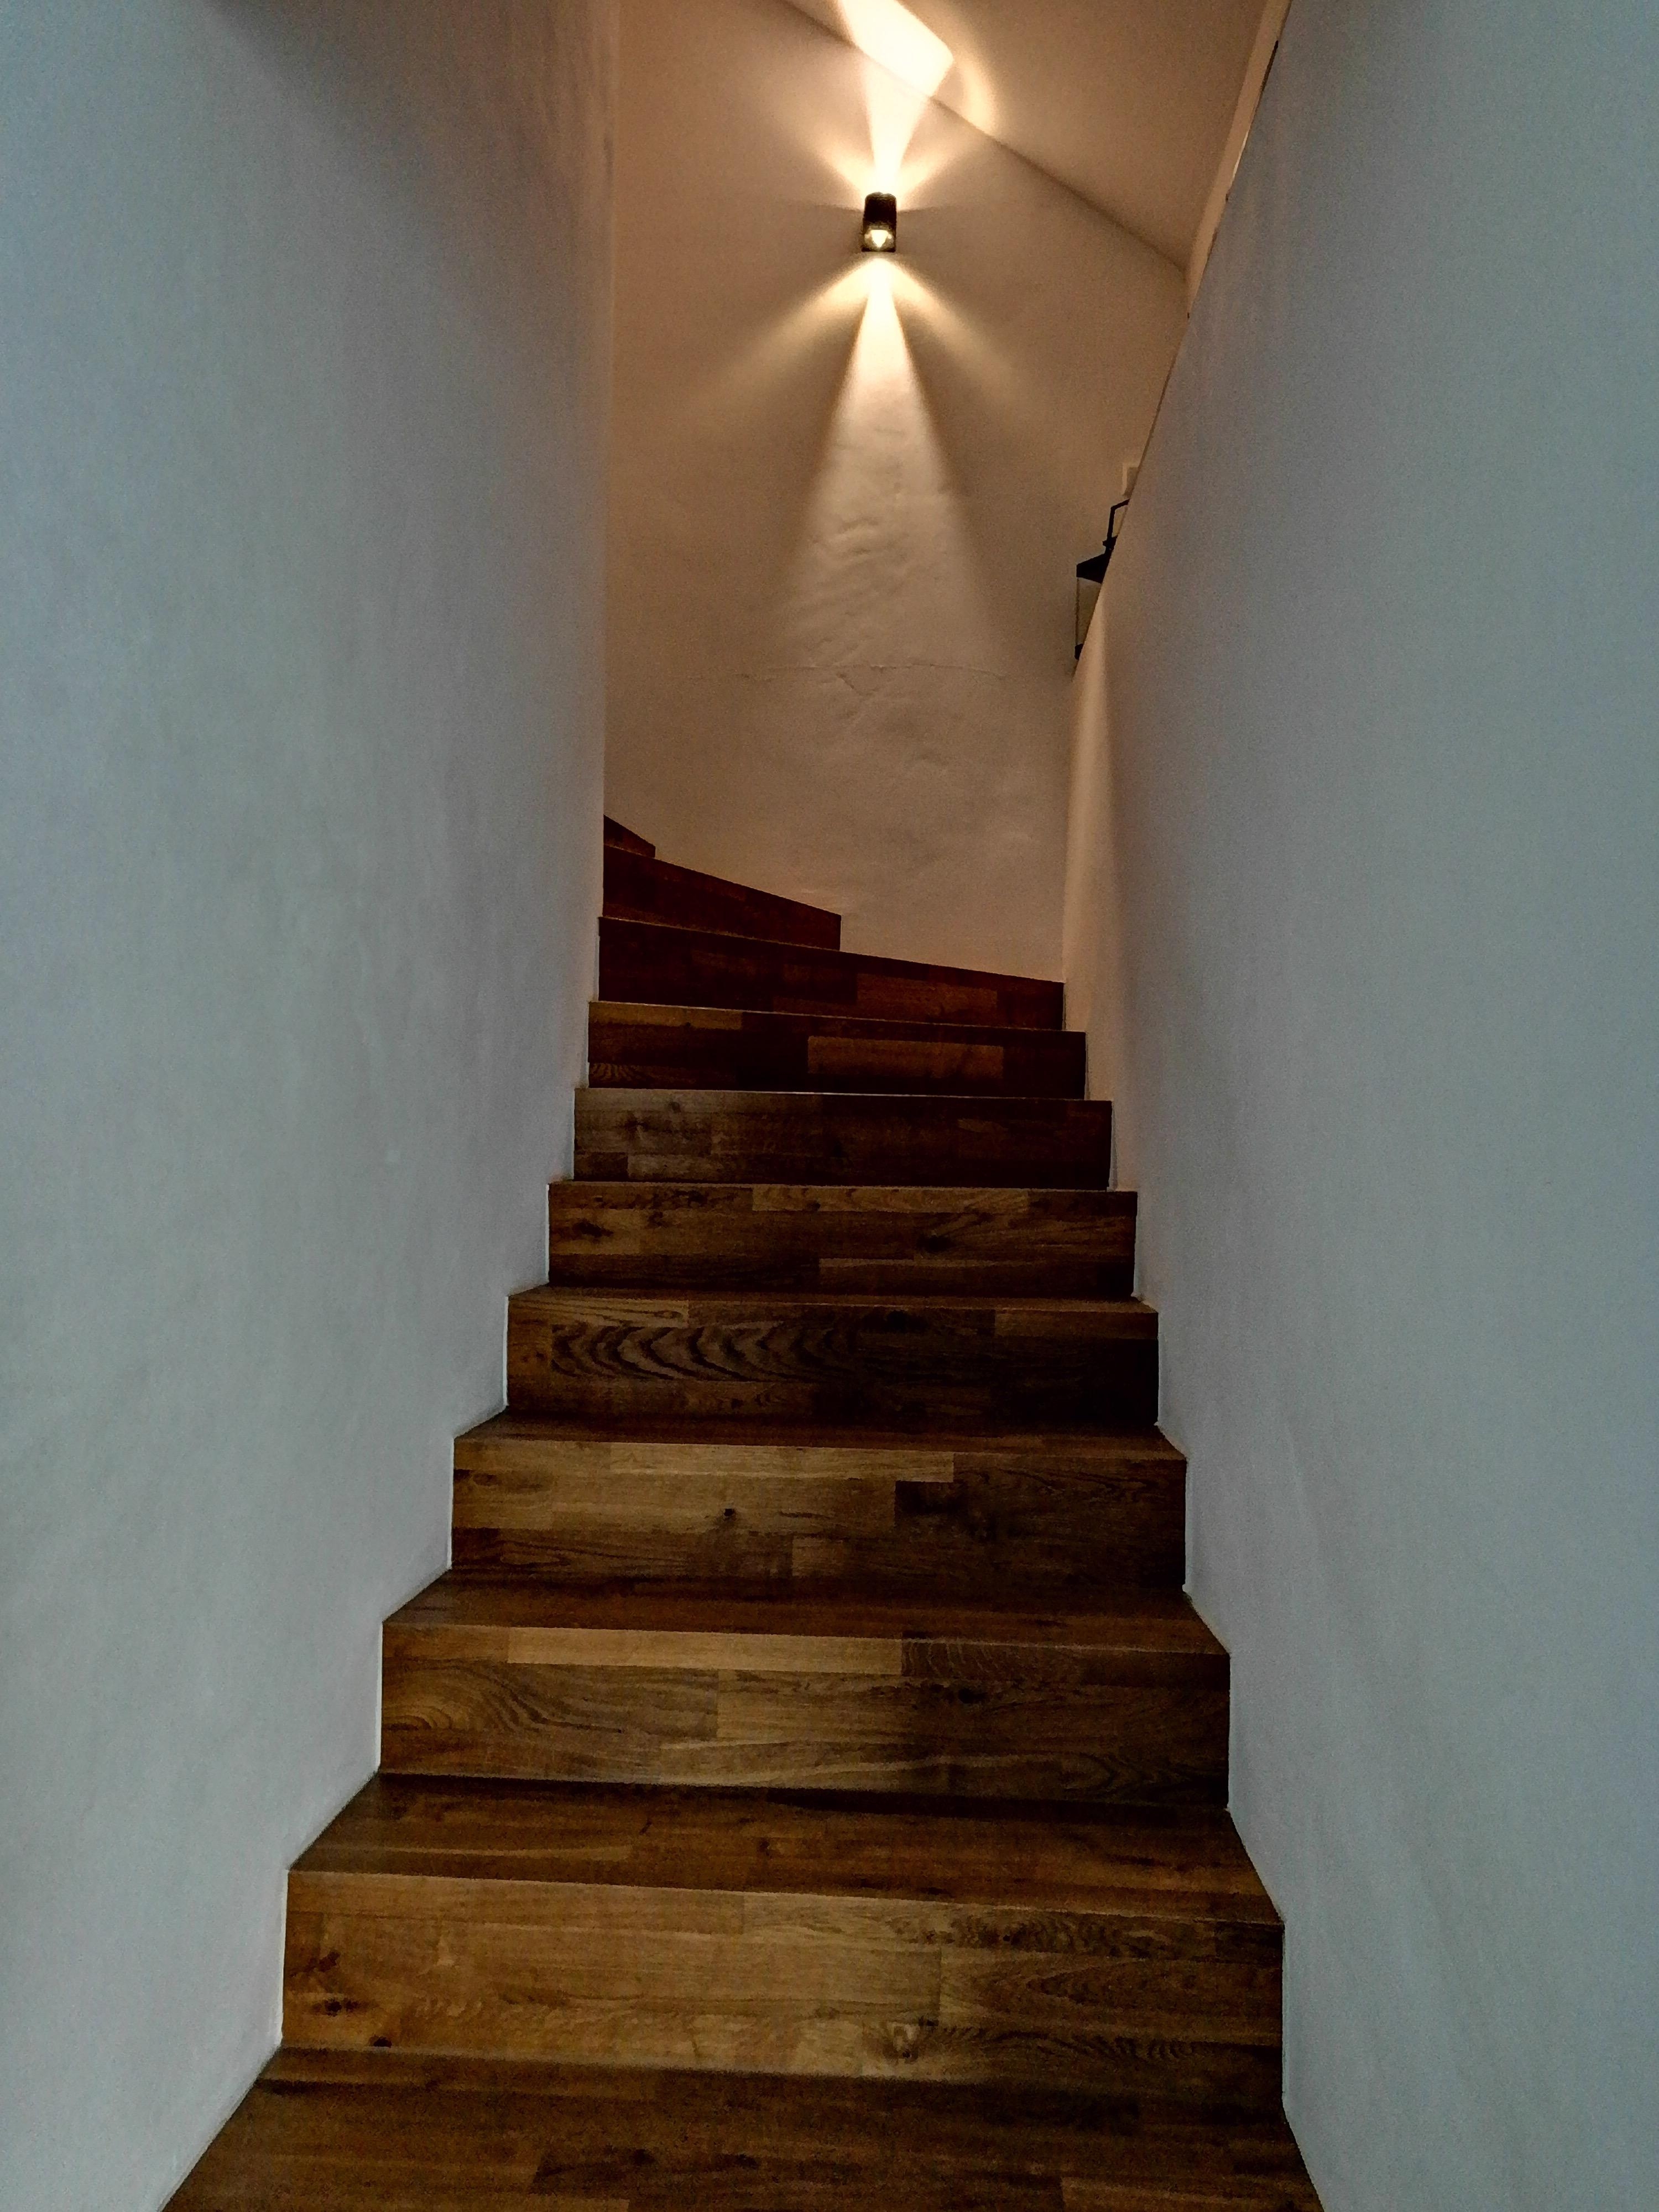 freue mich jedes Mal wenn ich dort hoch gehe. #Treppe #Treppenaufgang #Beleuchtung #Parkett